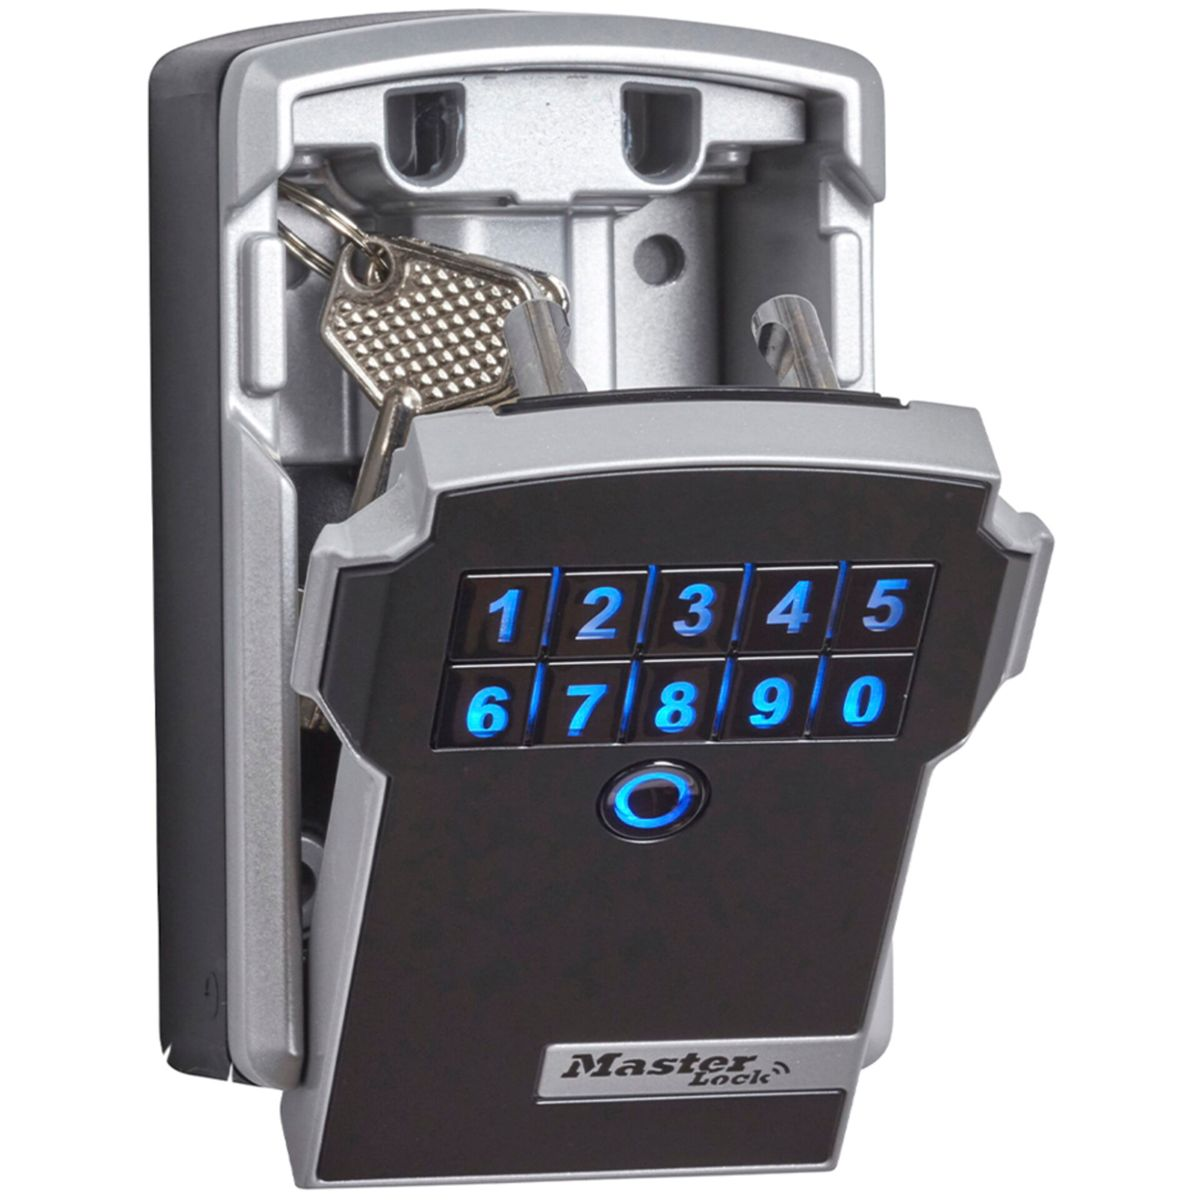 grau Master Schlüsselkasten Bluetooth MASTERLOCK schwarz 5441EURD Lock Schlüsseltresor schwarz grau /